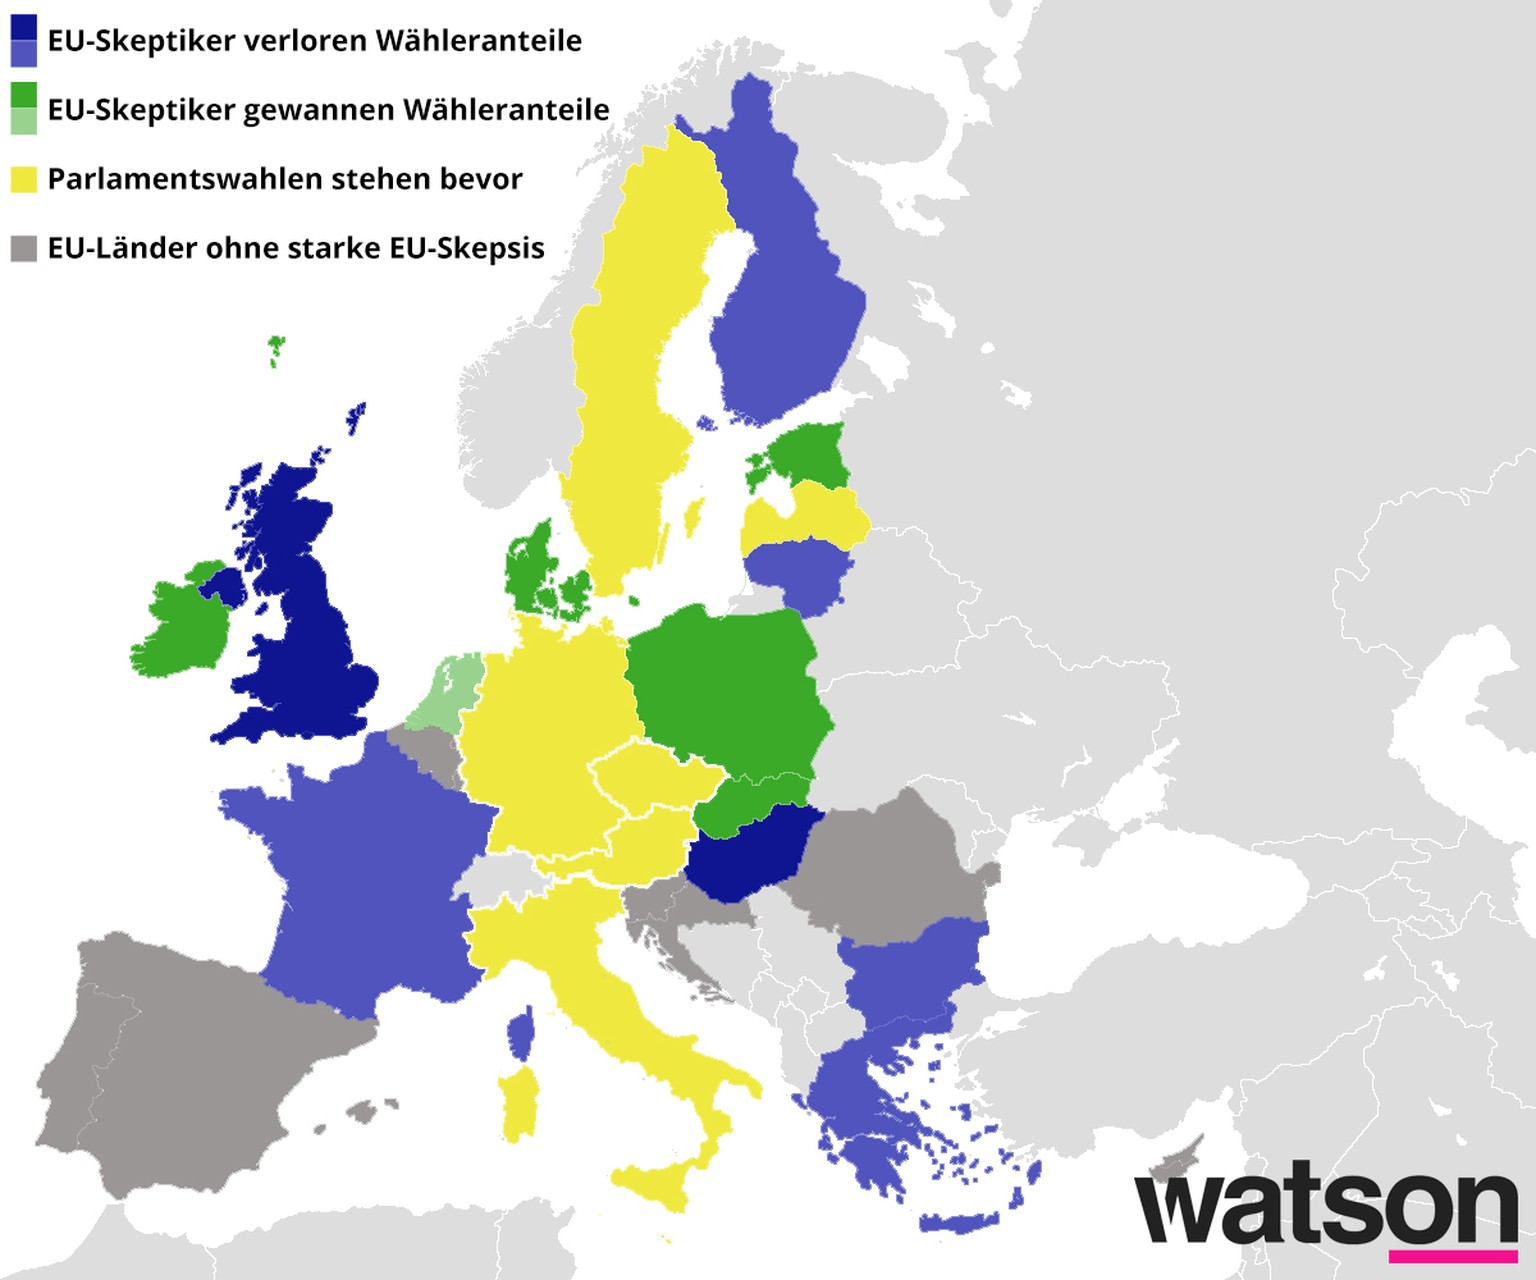 In den dunkelblauen und dunkelgrünen Ländern haben die EU-skeptischen Parteien mehr als 5 Prozent der Wähleranteile verloren beziehungsweise gewonnen.